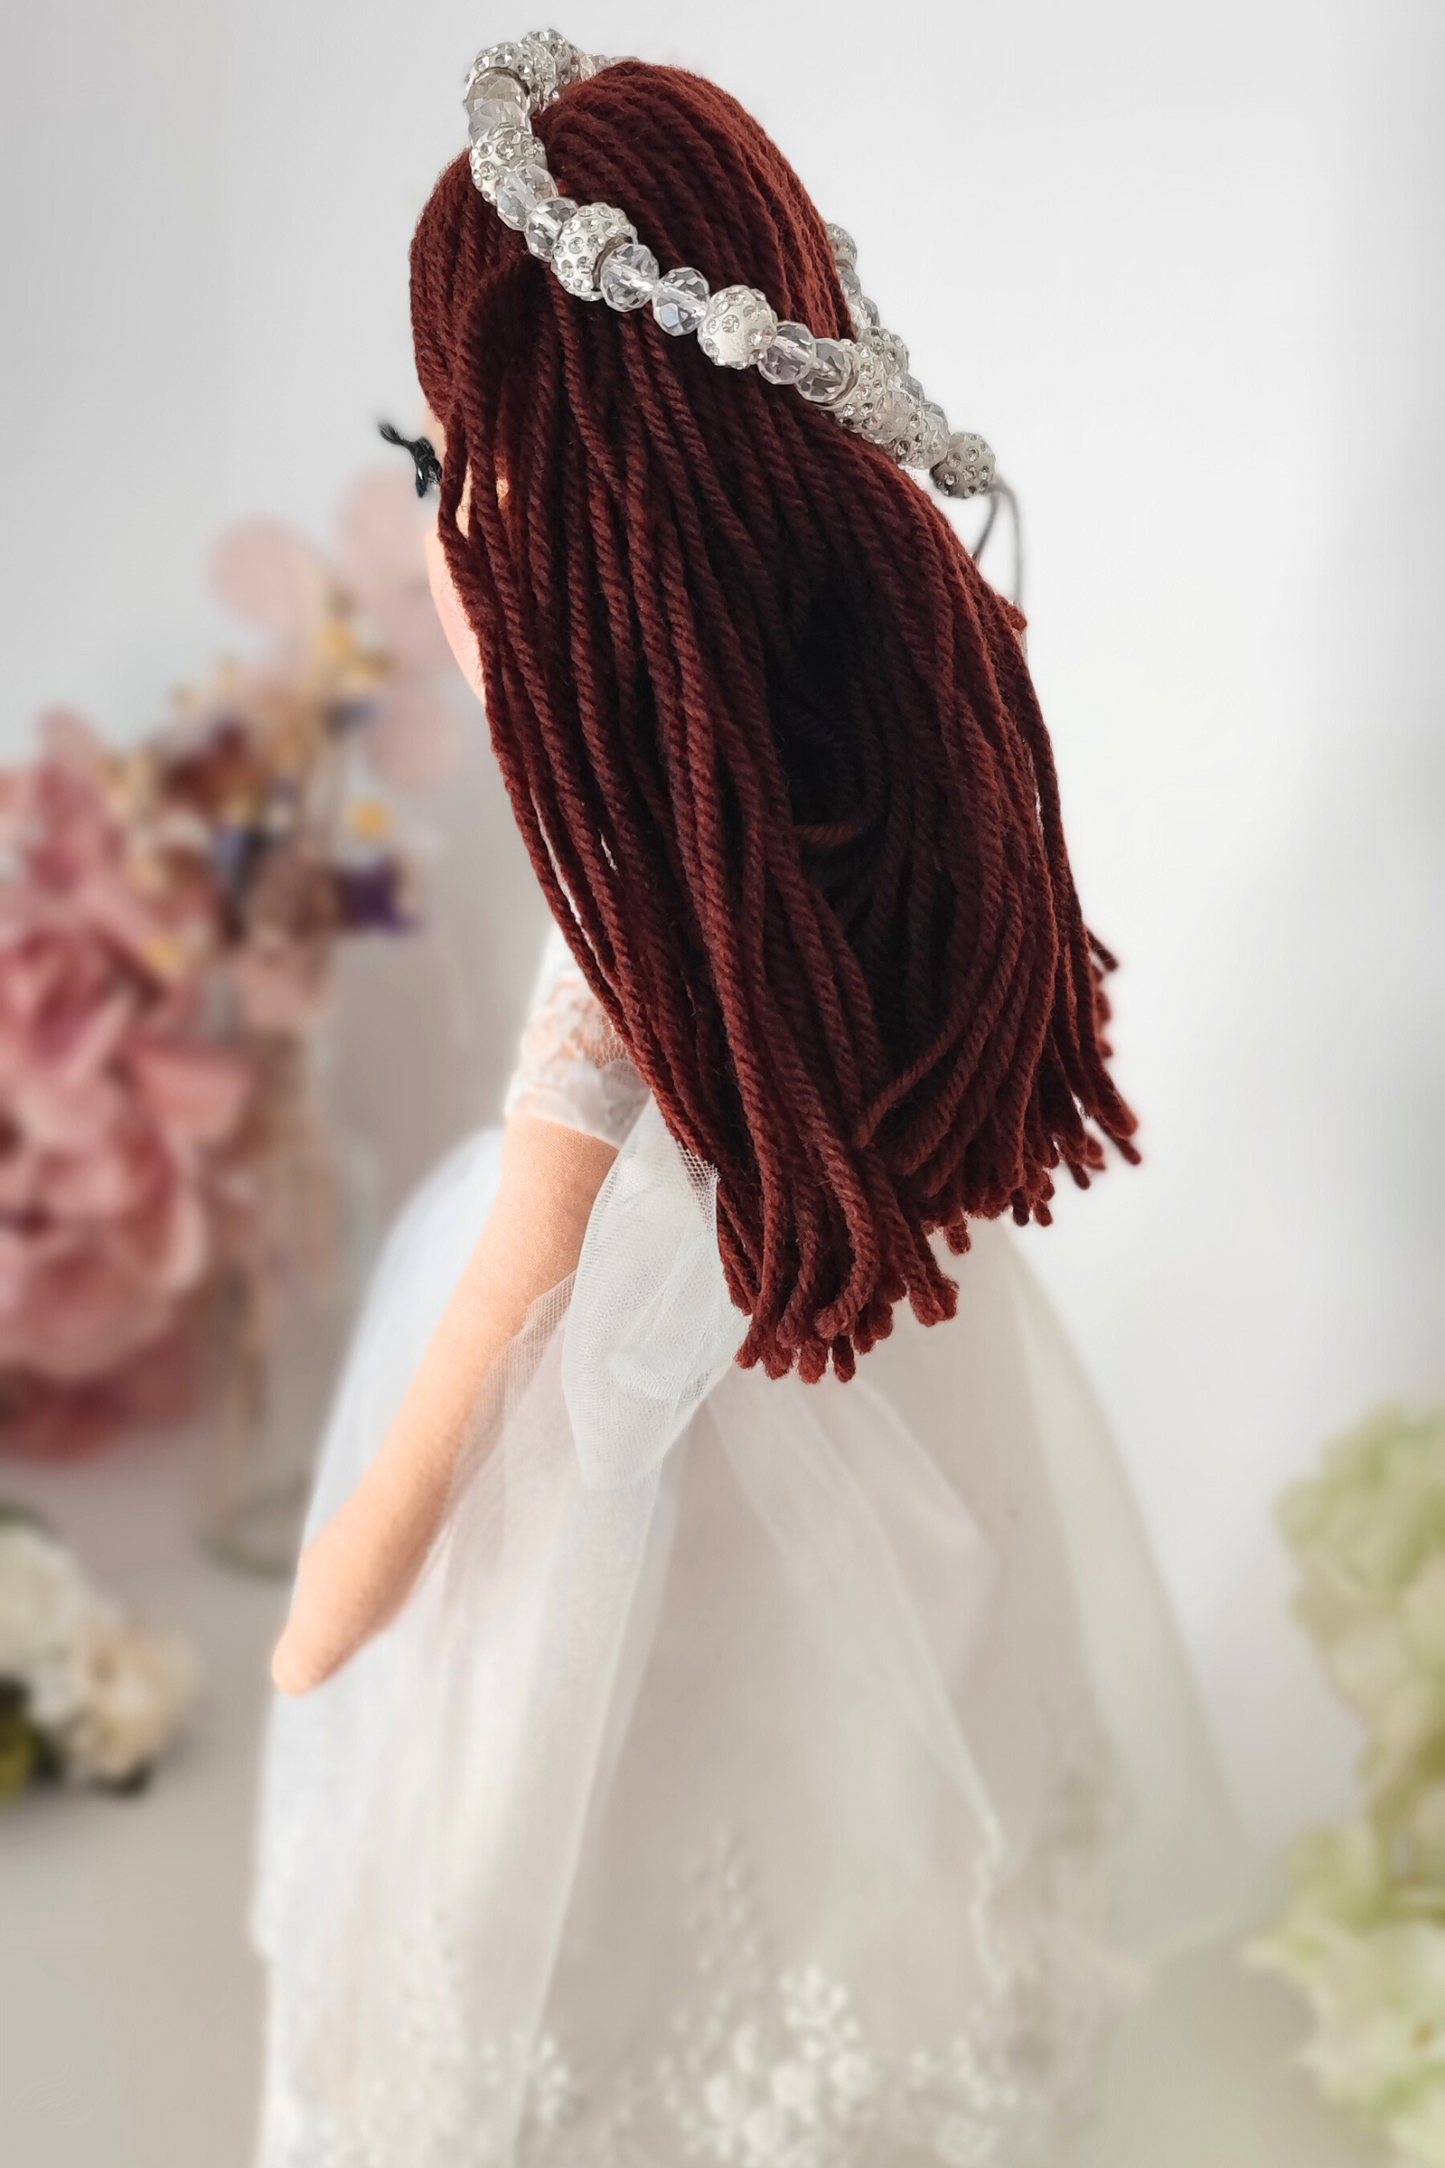 Muñeca de comunión con el pelo castaño y diadema de Swarovski